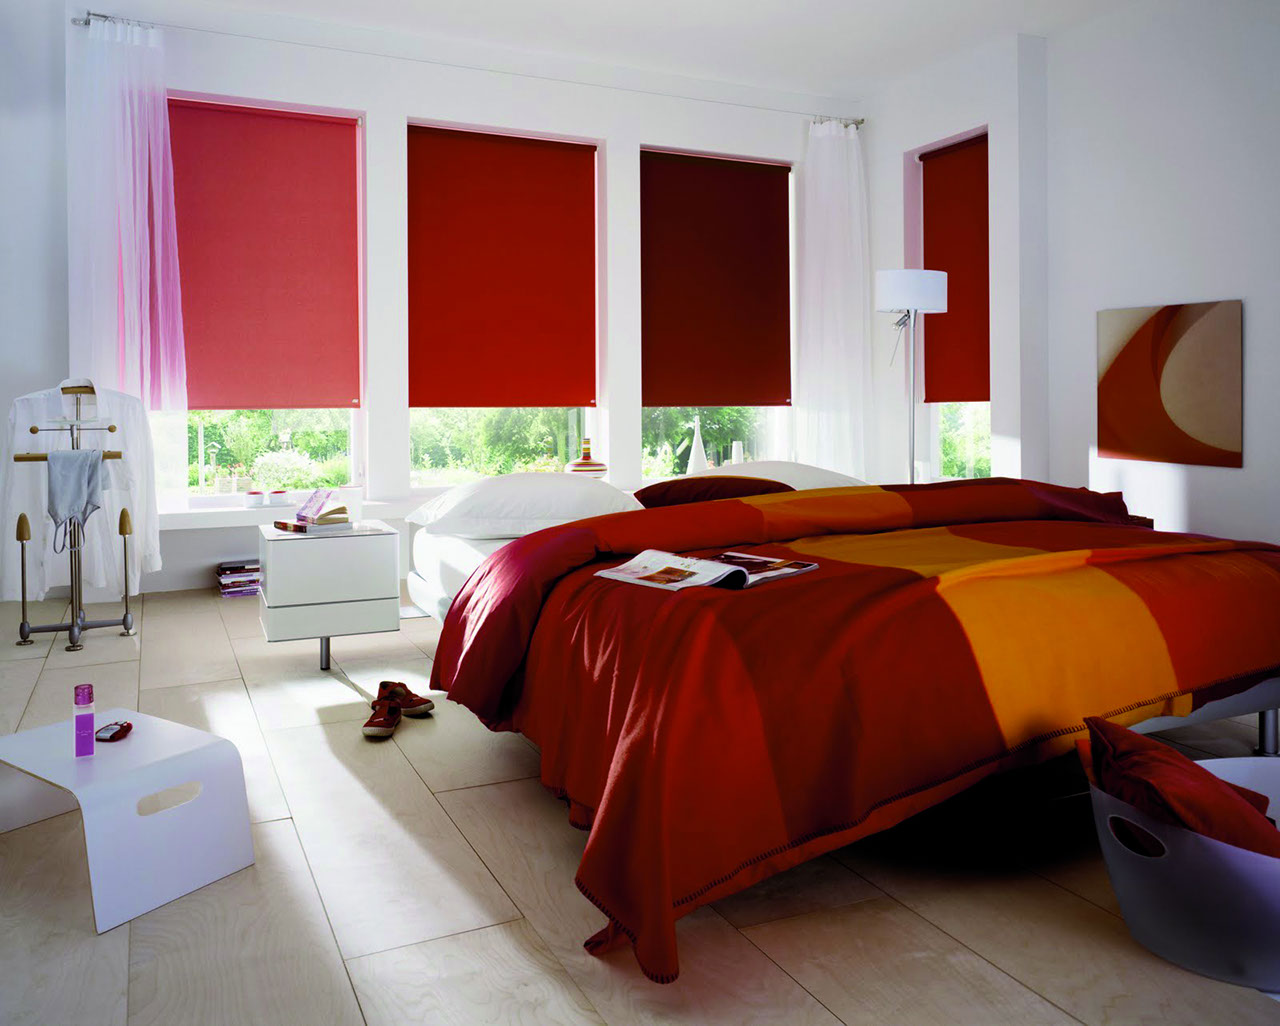 Chambre avec 4 fenêtres équipée de 4 stores écran à enrouleur. Ils sont chacun d'une couleur différente allant du rouge sombre à l'orange.